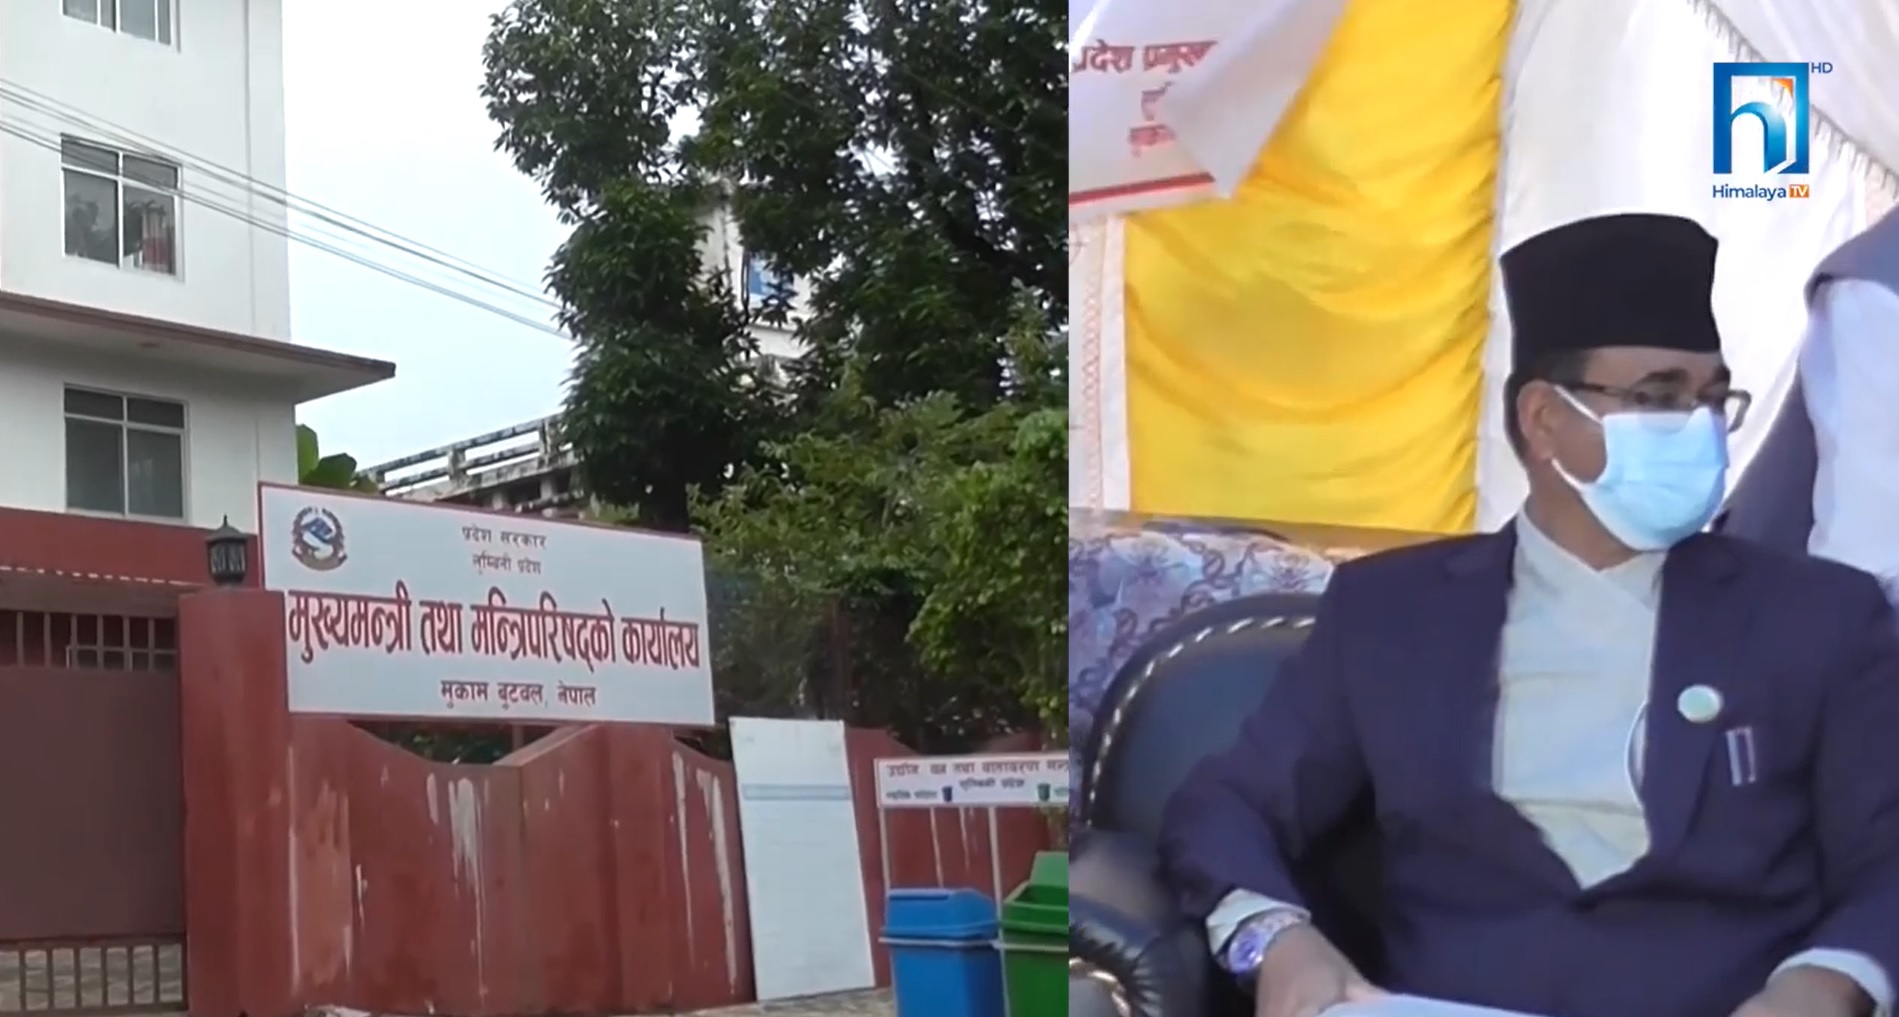 सरकार बनेको तीन महिना बित्नलाग्दा पनि लुम्बिनी प्रदेश सरकार बजेटविहीन (भिडियो रिपोर्टसहित)